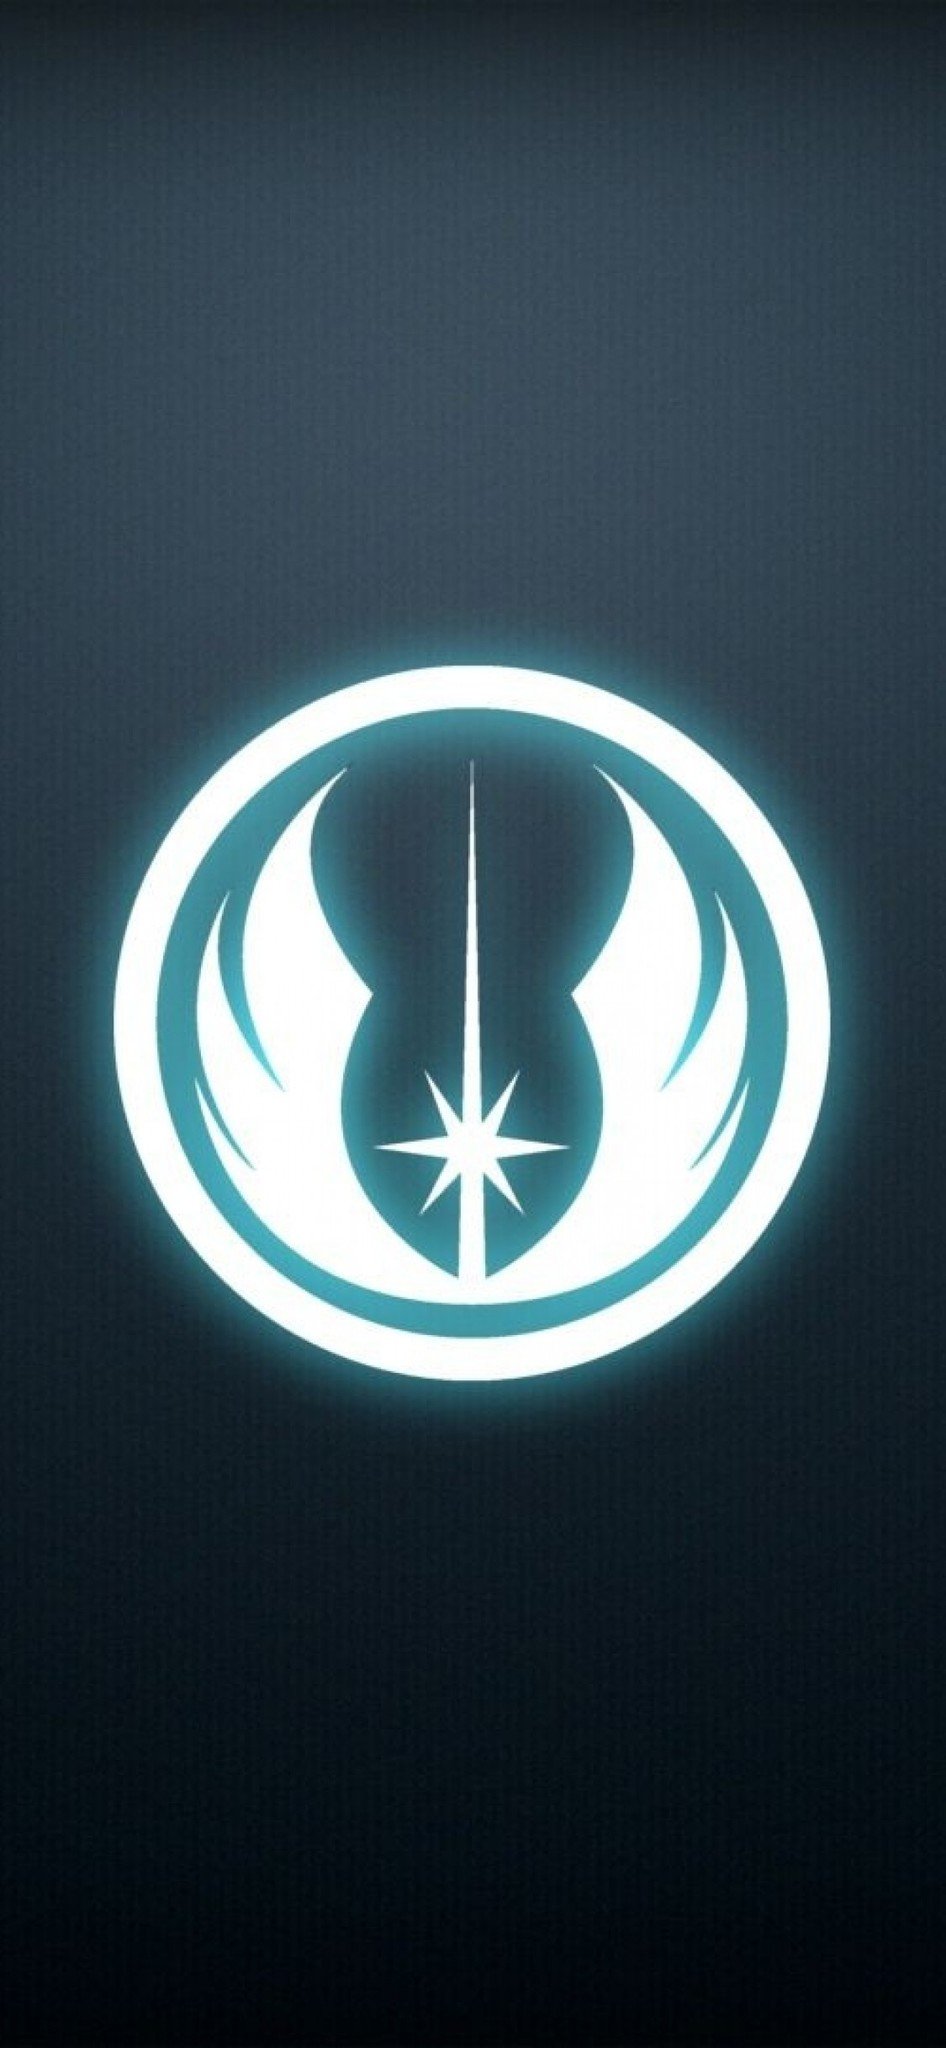 The Jedi Order